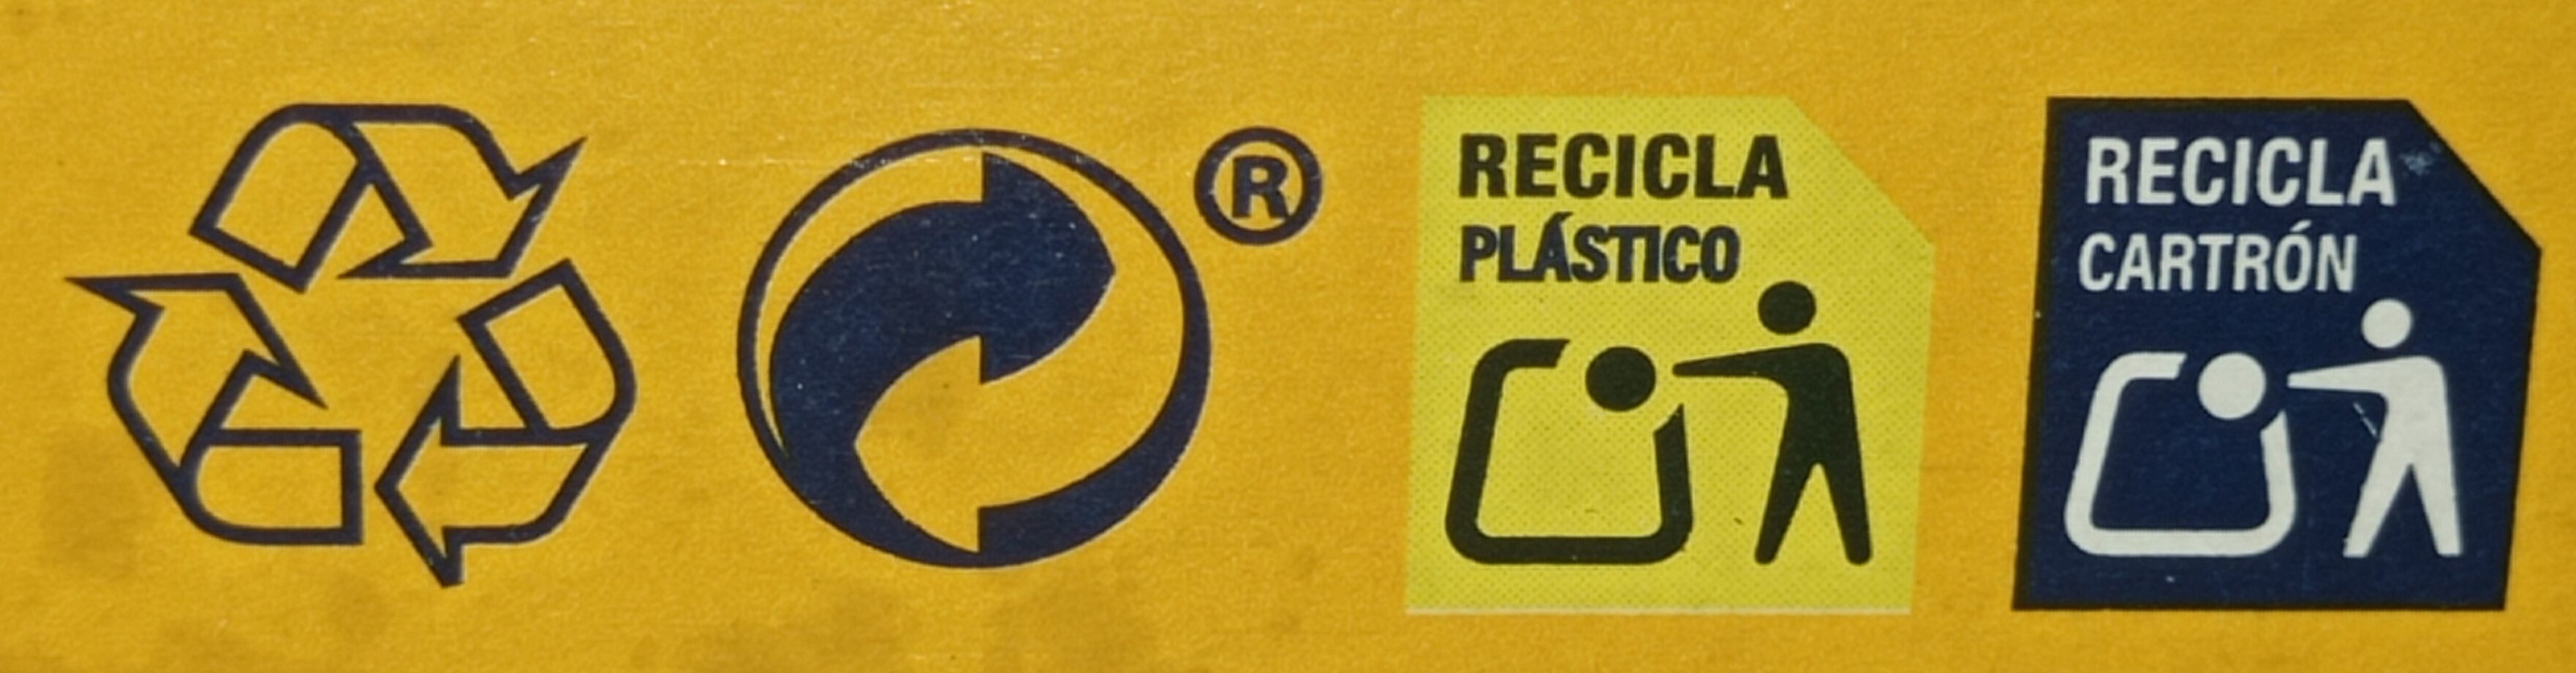 Mini Tostas Rectangulares Ortiz - Instrucciones de reciclaje y/o información de embalaje